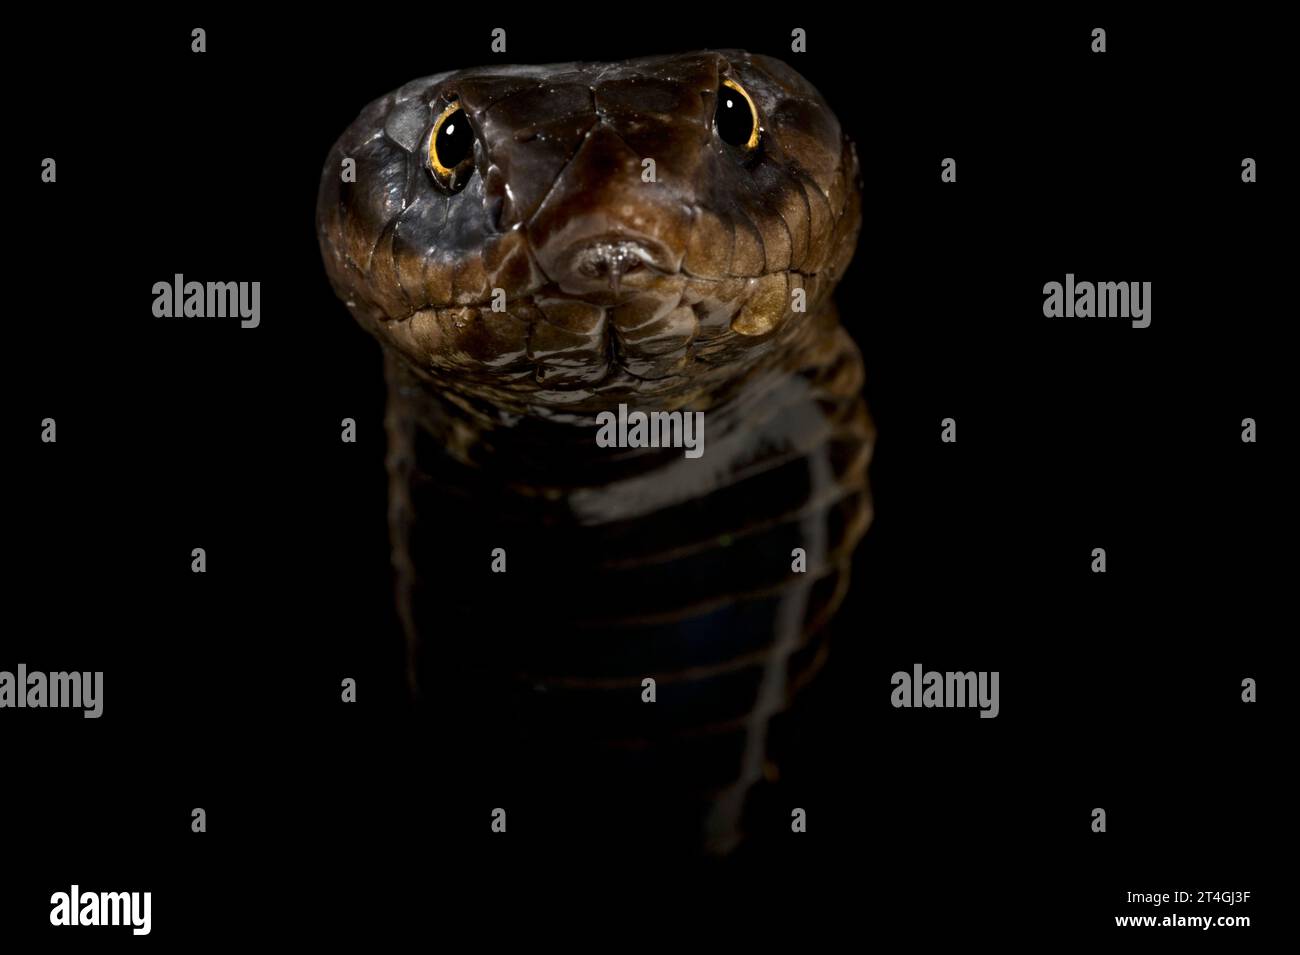 Rinkhals cobra (Hemachatus haemachatus) Stock Photo